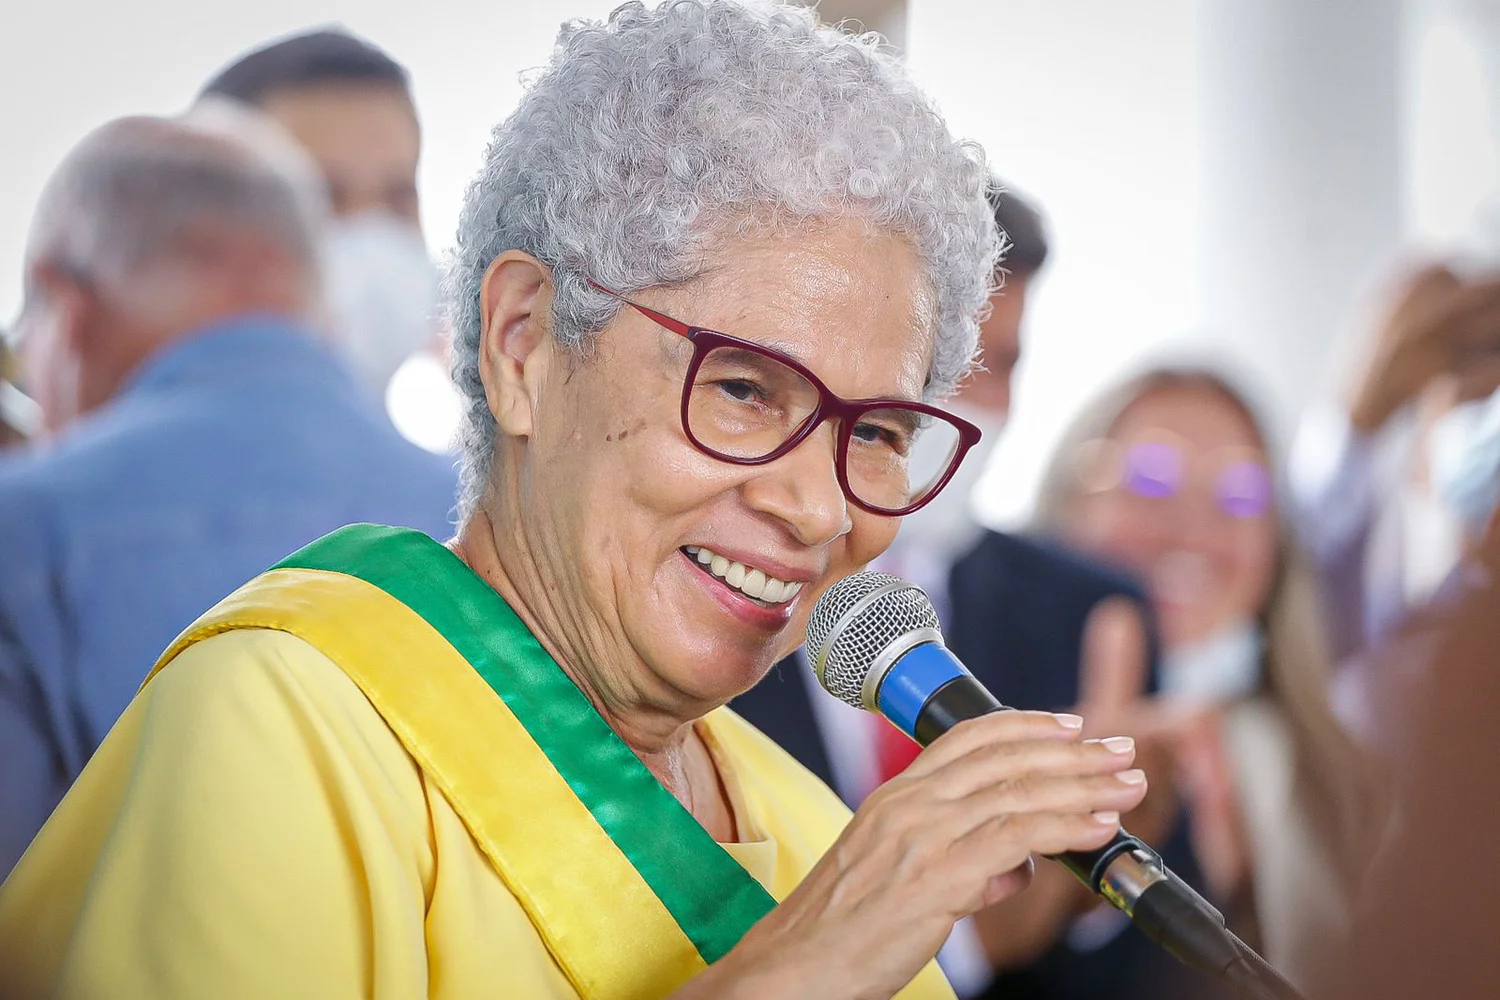 Regina Sousa decreta ponto facultativo no dia 15 de agosto em Teresina —  Assembleia Legislativa do Piauí